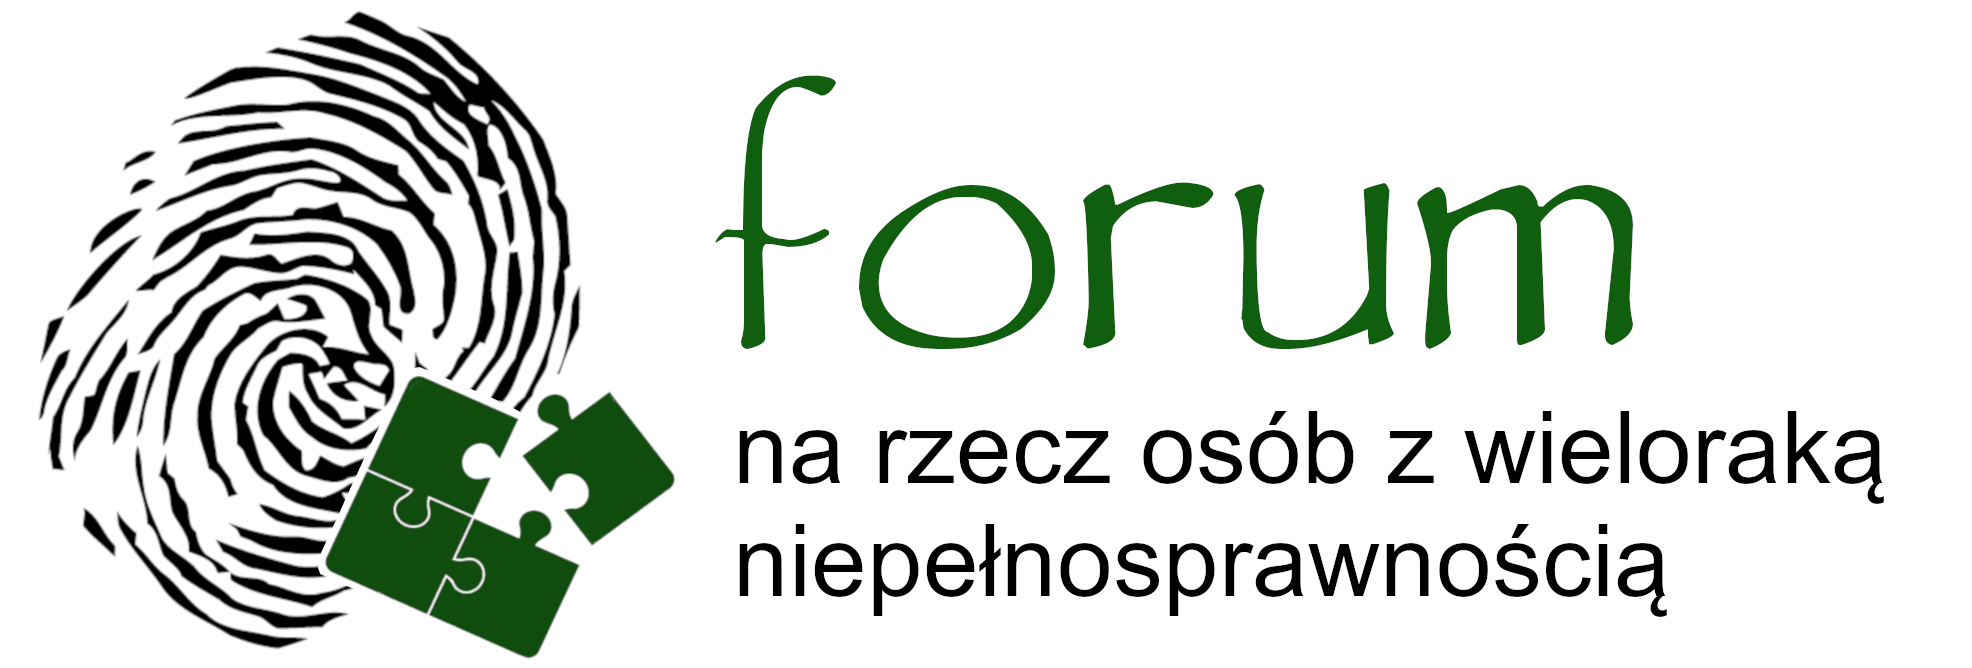 Forum_logo ostateczne.png